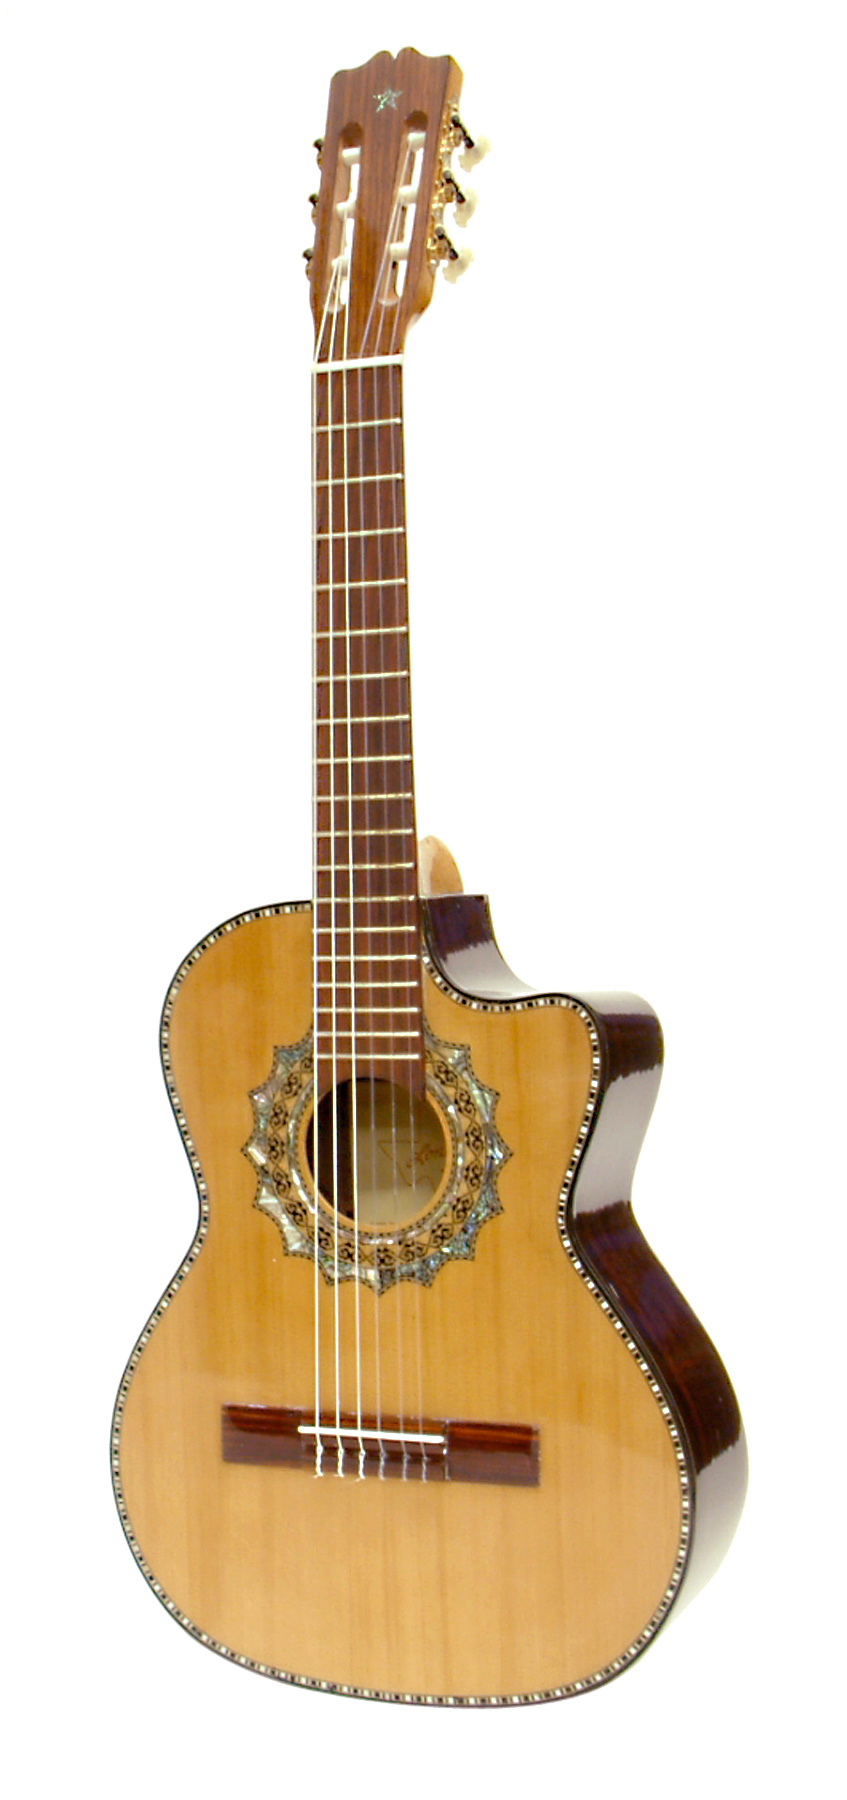 Paracho Elite Zapata Acoustic Requinto Guitar